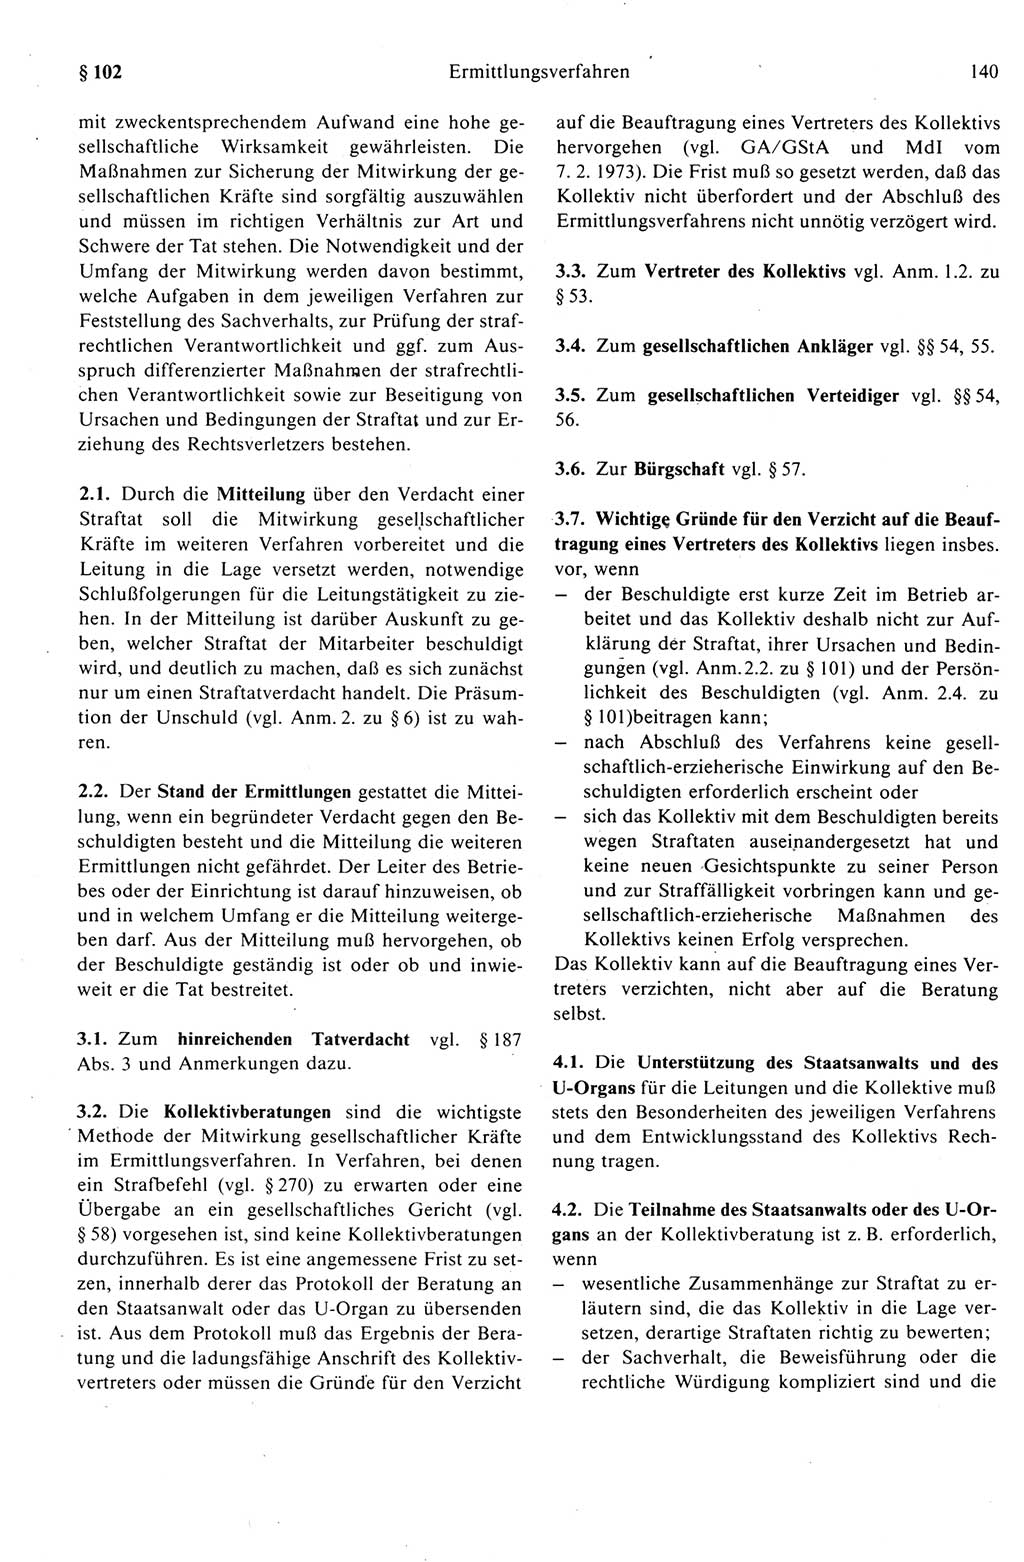 Strafprozeßrecht der DDR (Deutsche Demokratische Republik), Kommentar zur Strafprozeßordnung (StPO) 1989, Seite 140 (Strafprozeßr. DDR Komm. StPO 1989, S. 140)